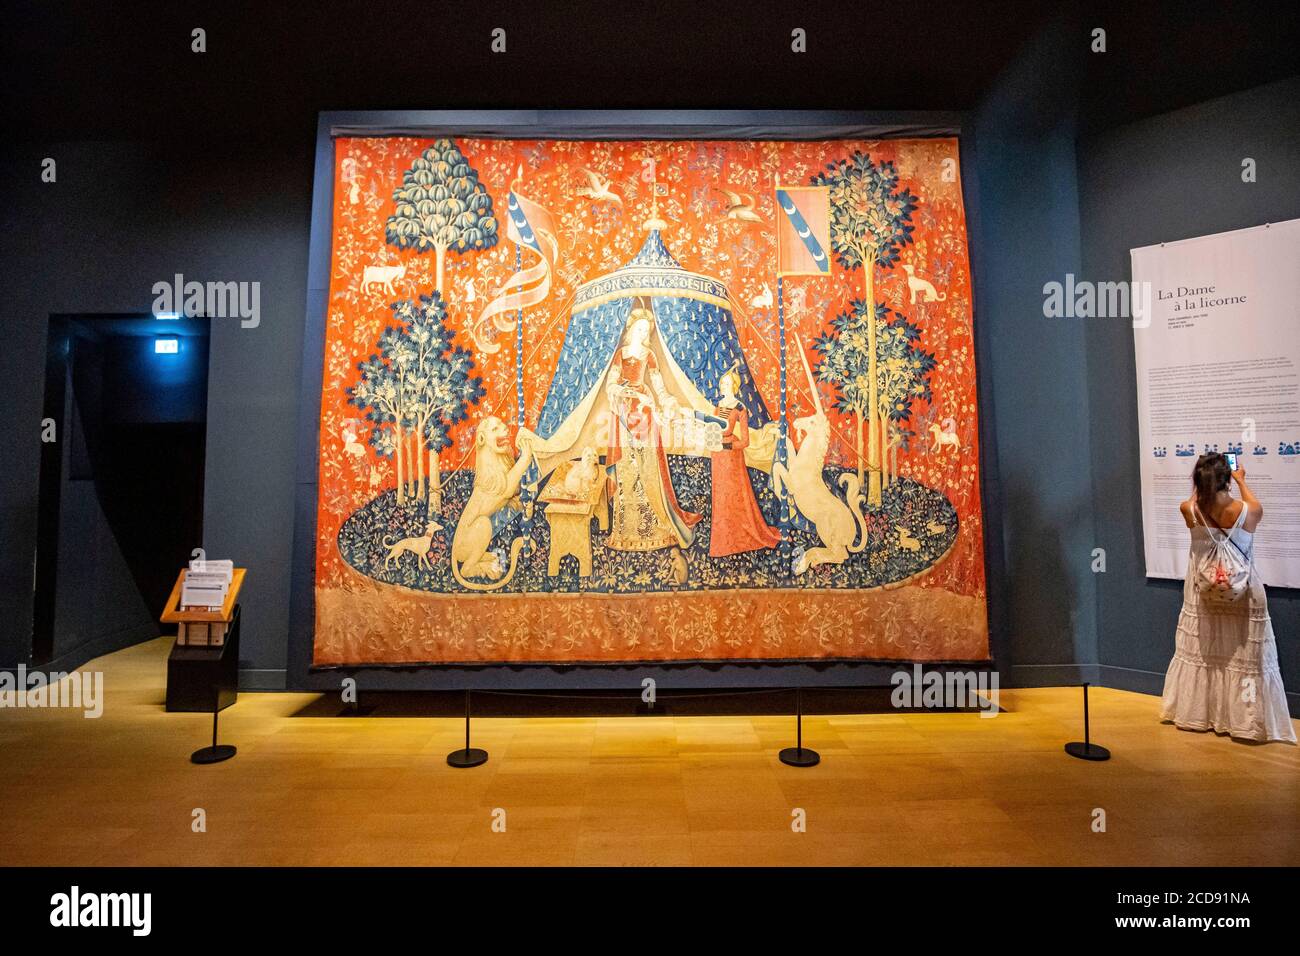 Francia, París, Museo Nacional de la Edad Media-Museo Cluny, tapices de la Señora con el Unicornio: Mi único deseo Foto de stock